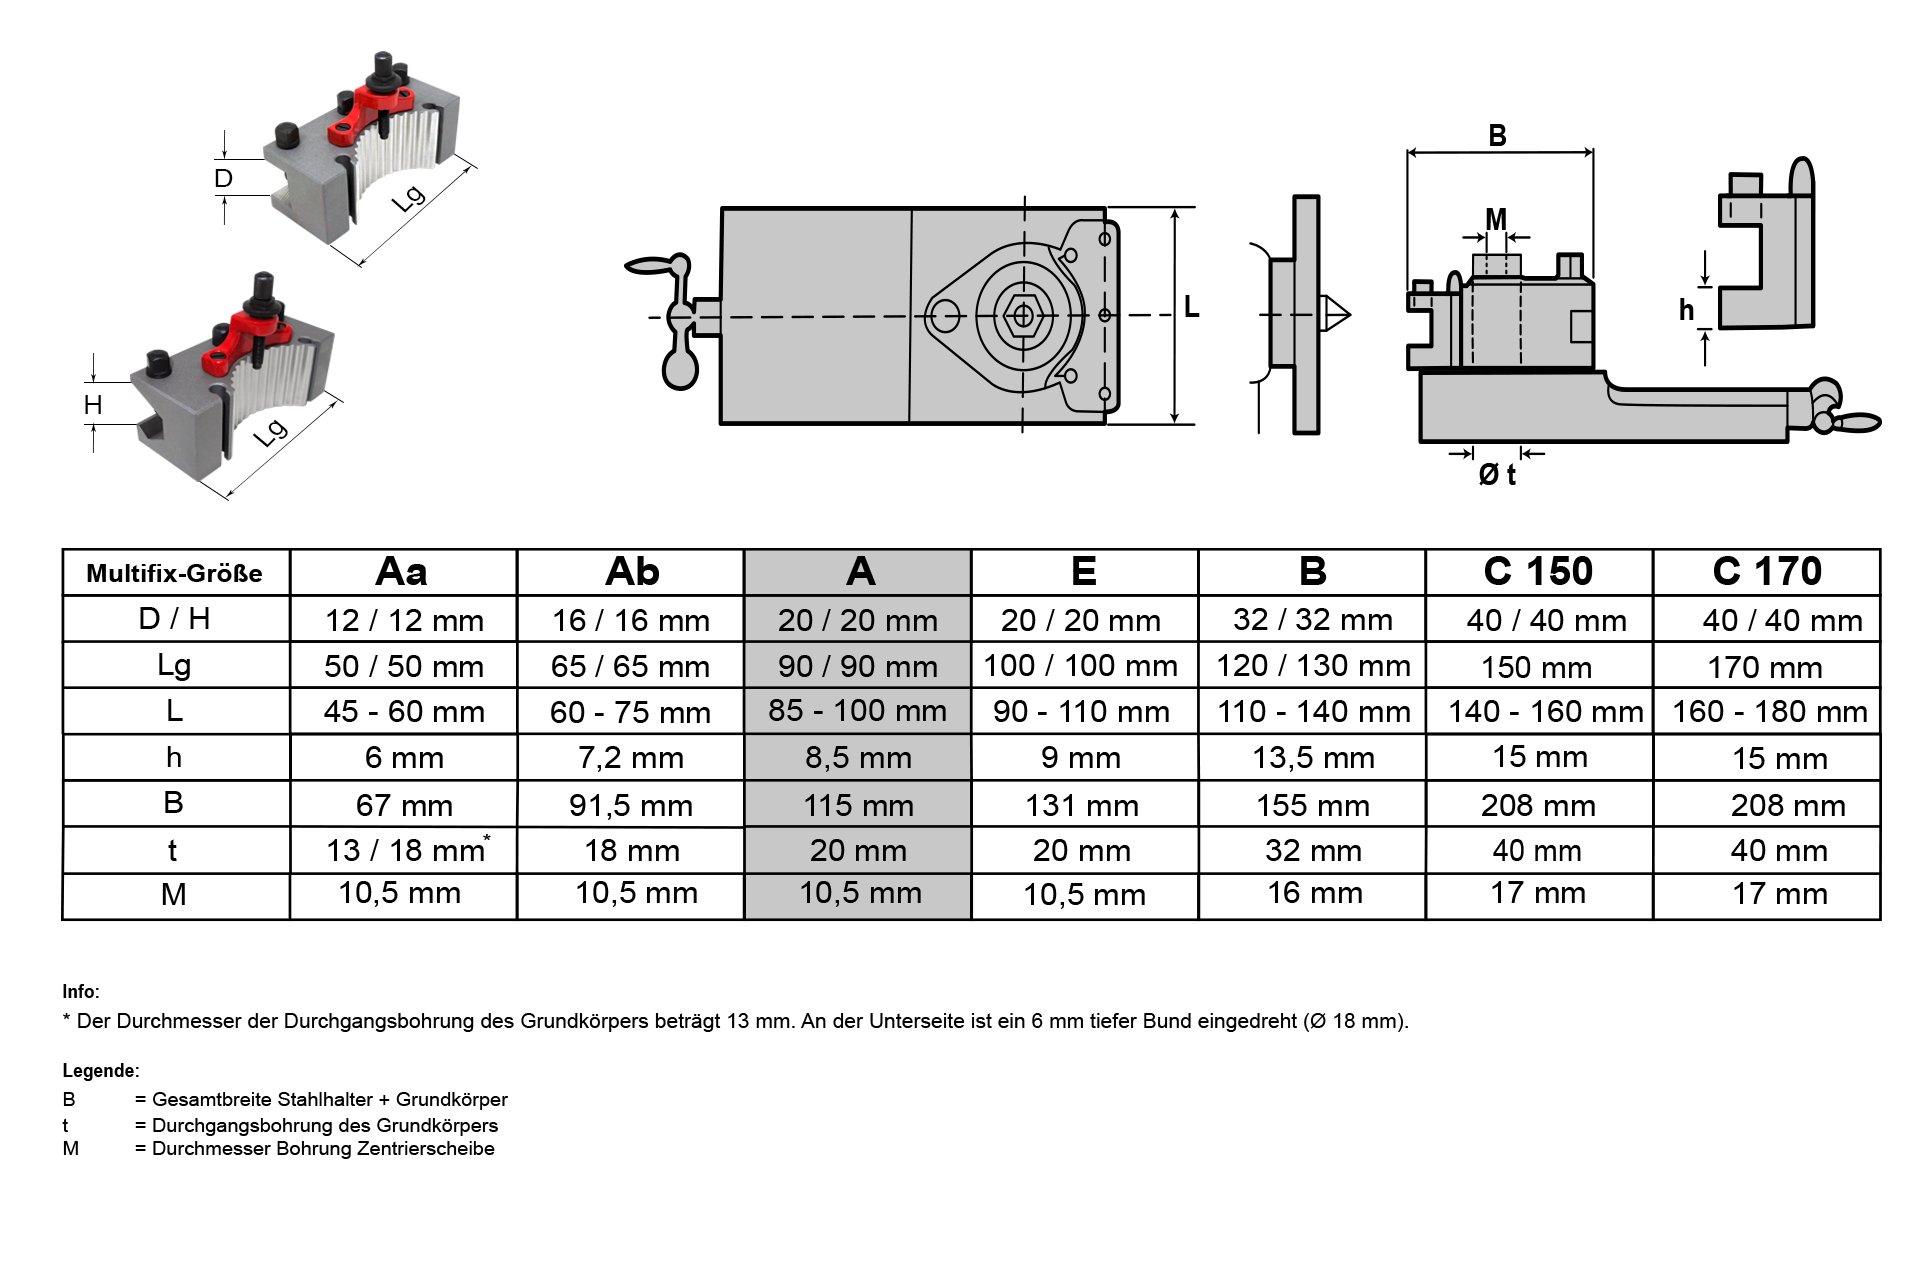 Schnellwechsel-Stahlhalter-Set, System "Multifix", Größe A